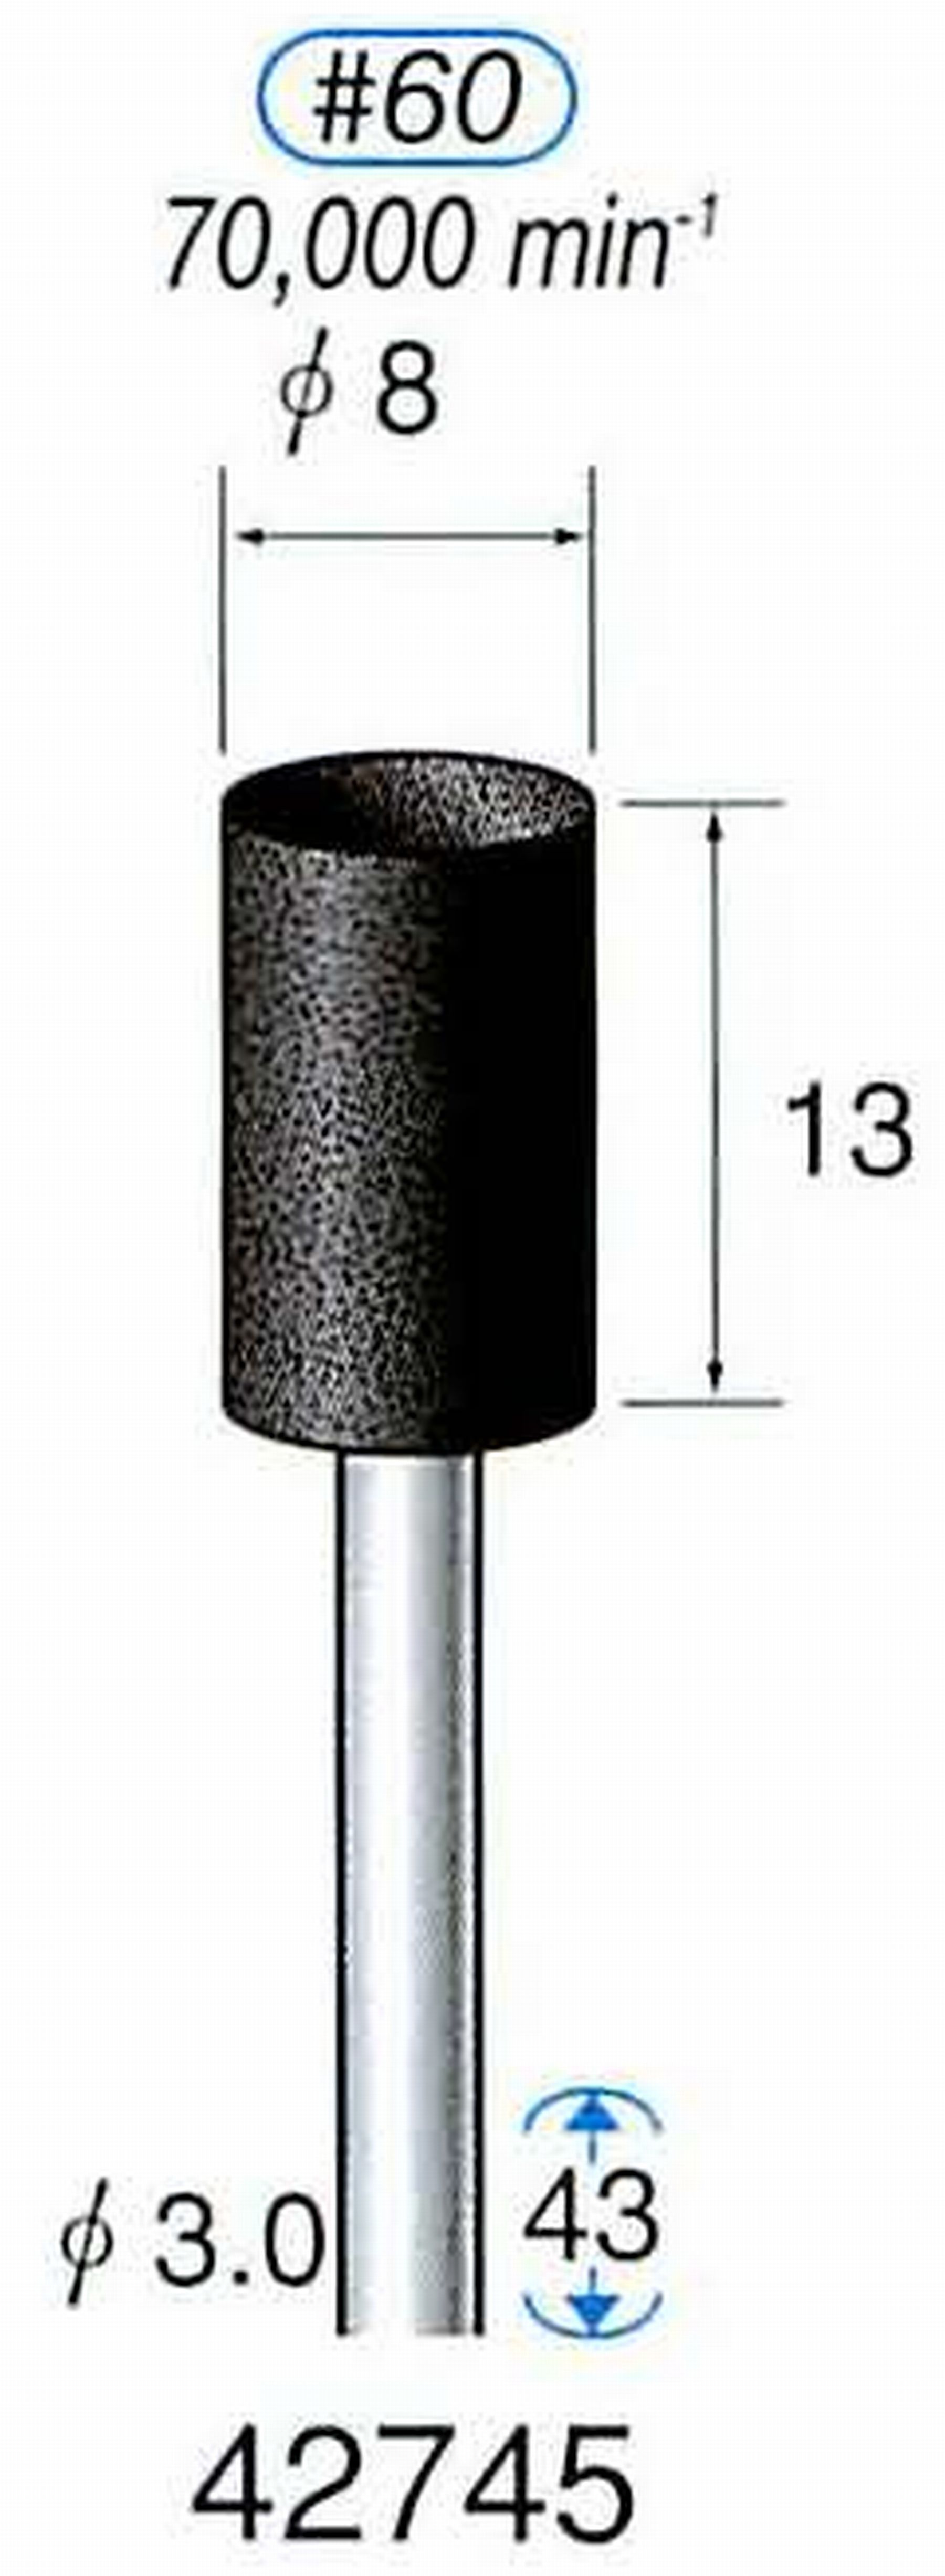 ナカニシ/NAKANISHI 軸付砥石(A砥粒) ブラック砥石 軸径(シャンク) φ3.0mm 42745